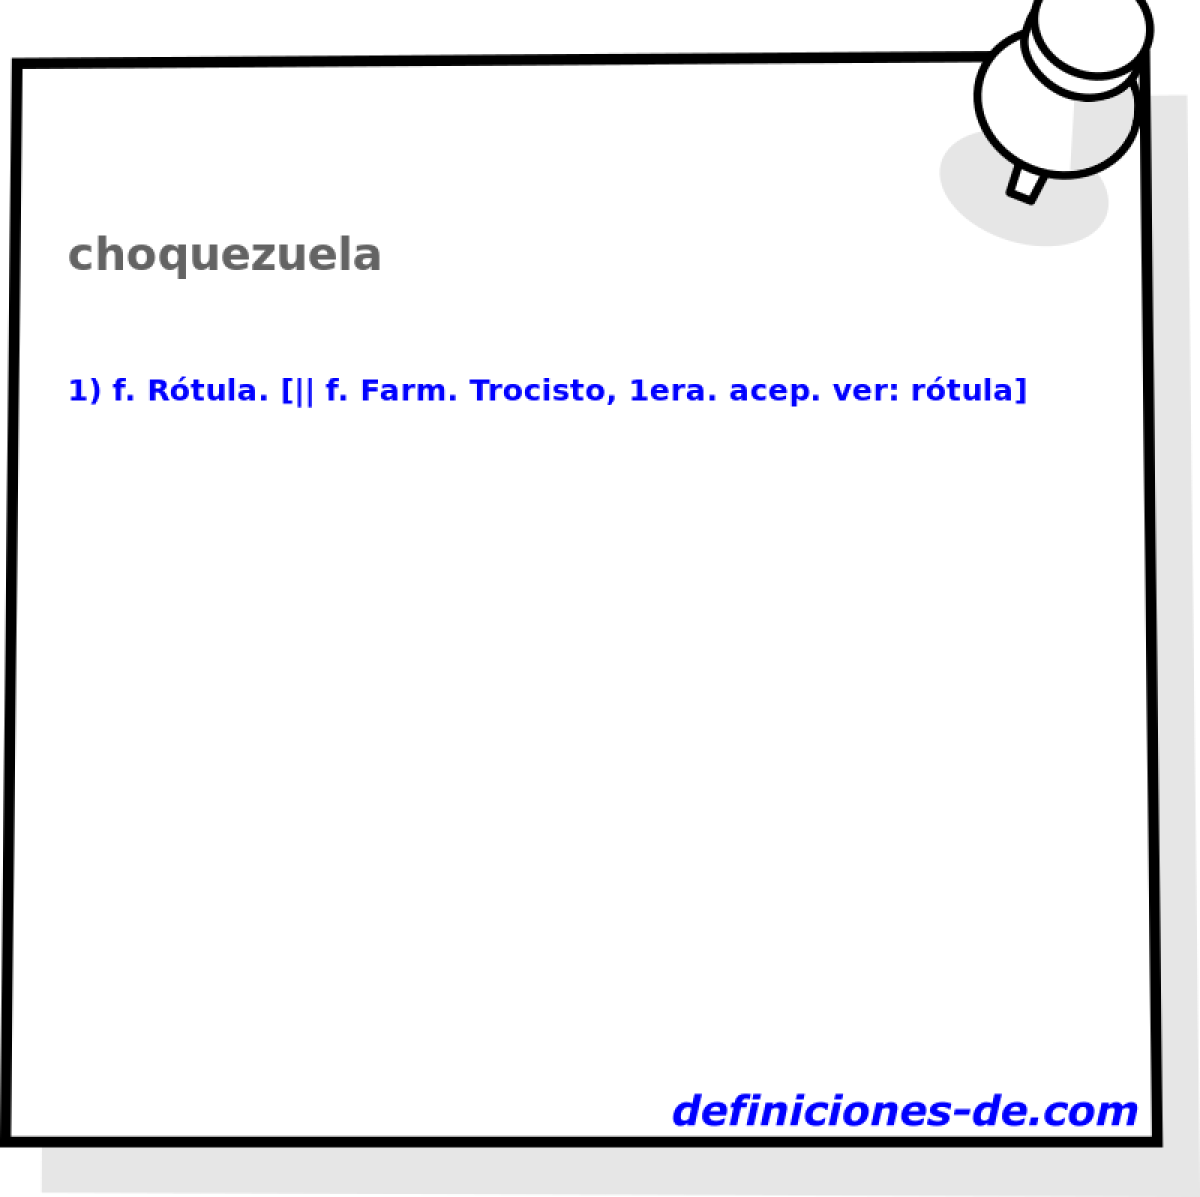 choquezuela 